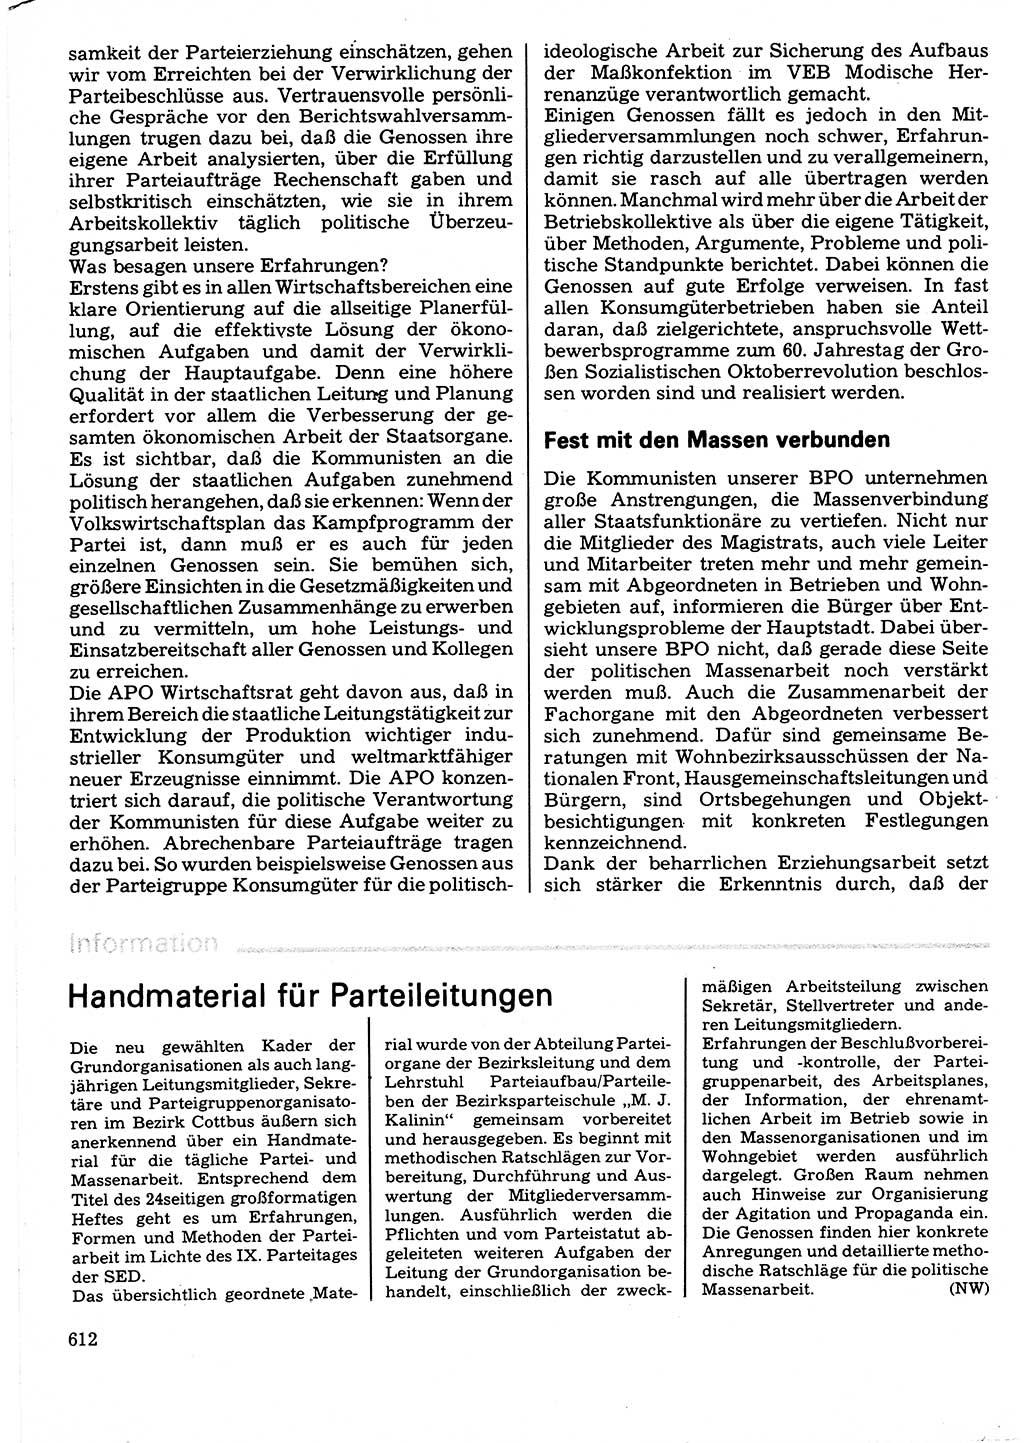 Neuer Weg (NW), Organ des Zentralkomitees (ZK) der SED (Sozialistische Einheitspartei Deutschlands) für Fragen des Parteilebens, 32. Jahrgang [Deutsche Demokratische Republik (DDR)] 1977, Seite 612 (NW ZK SED DDR 1977, S. 612)